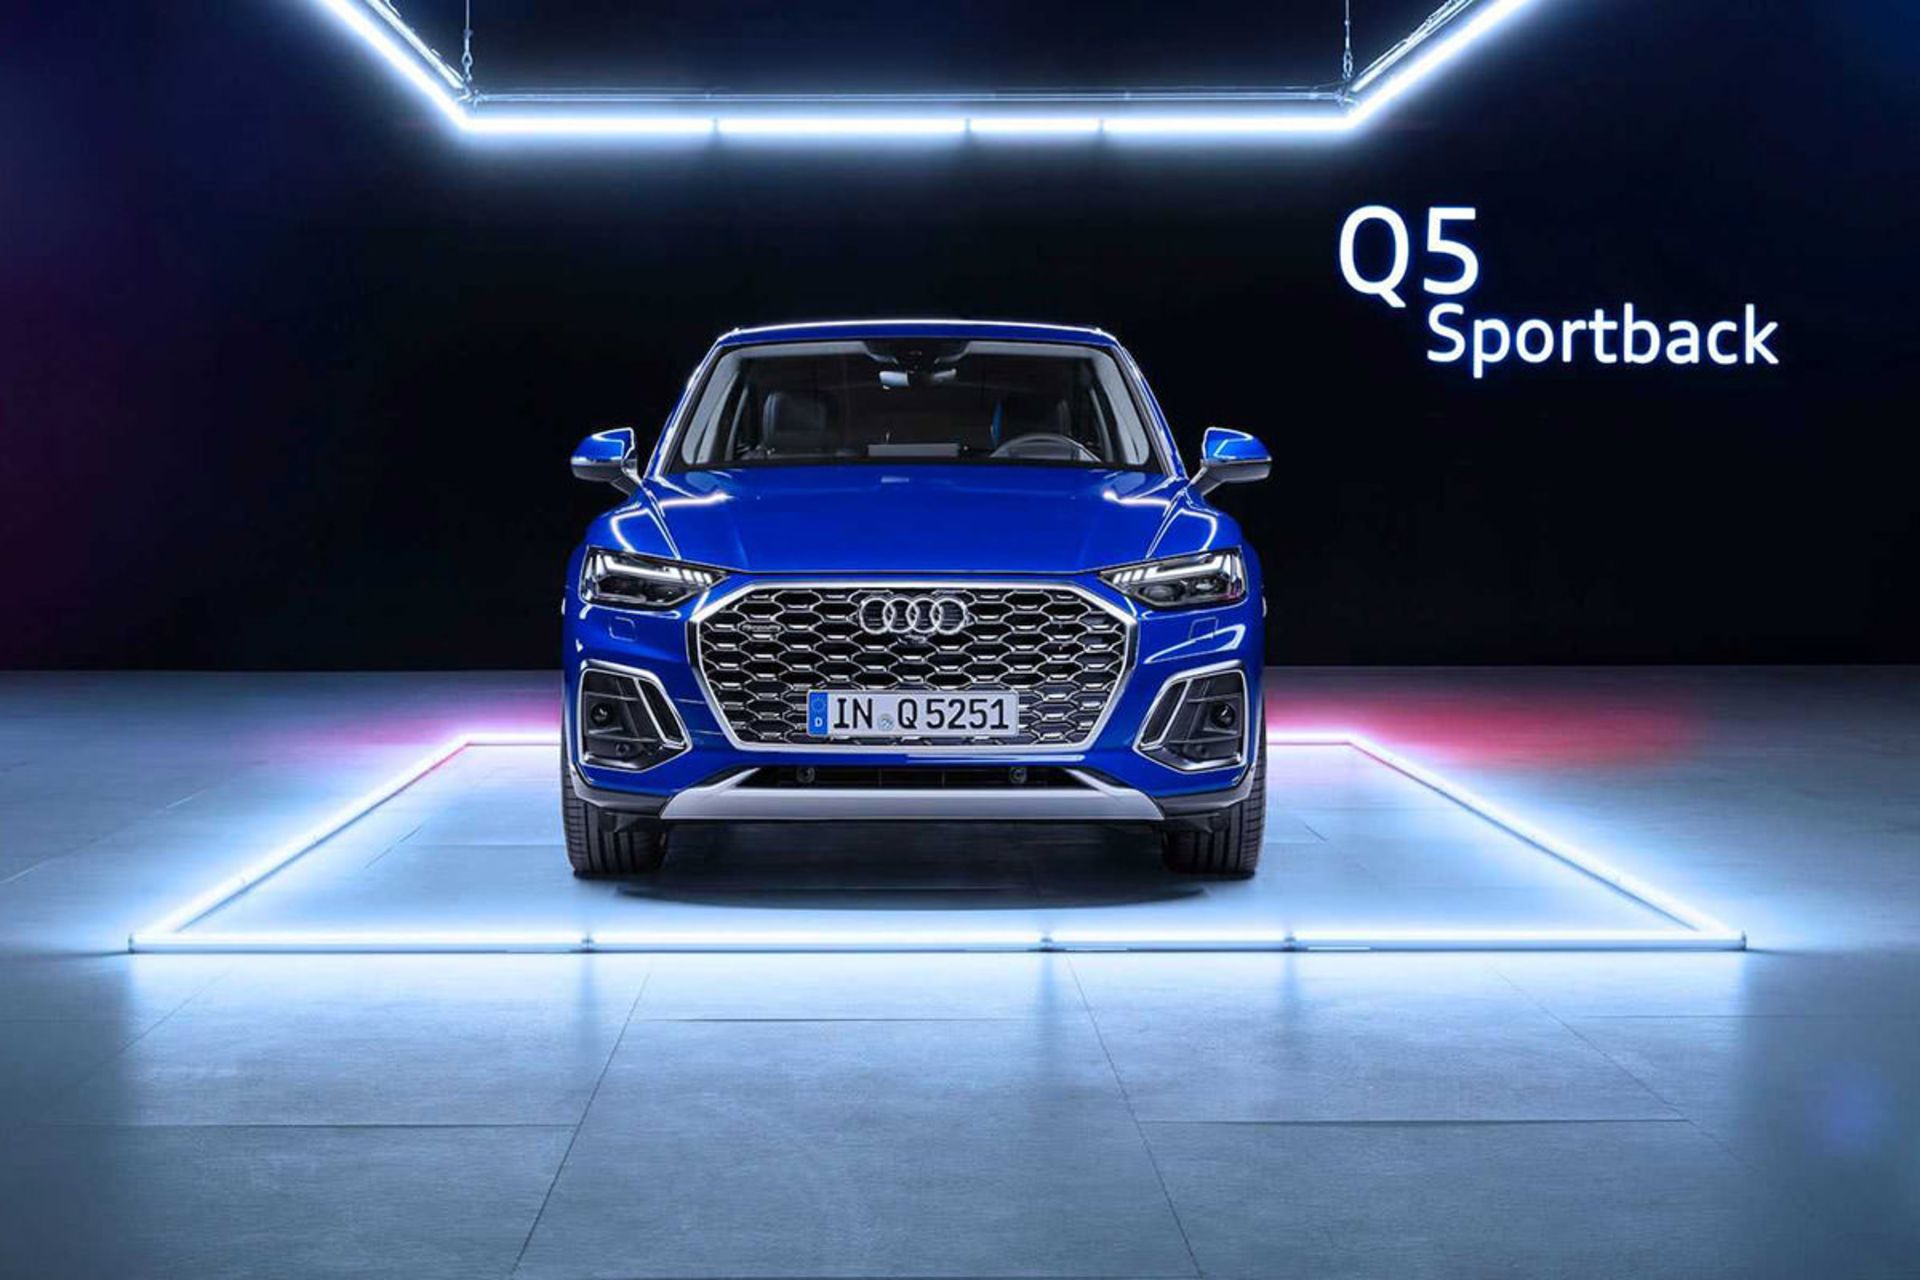 مرجع متخصصين ايران نماي جلو كراس اور آئودي كيو 5 اسپرت بك / 2021 Audi Q5 Sportback آبي رنگ